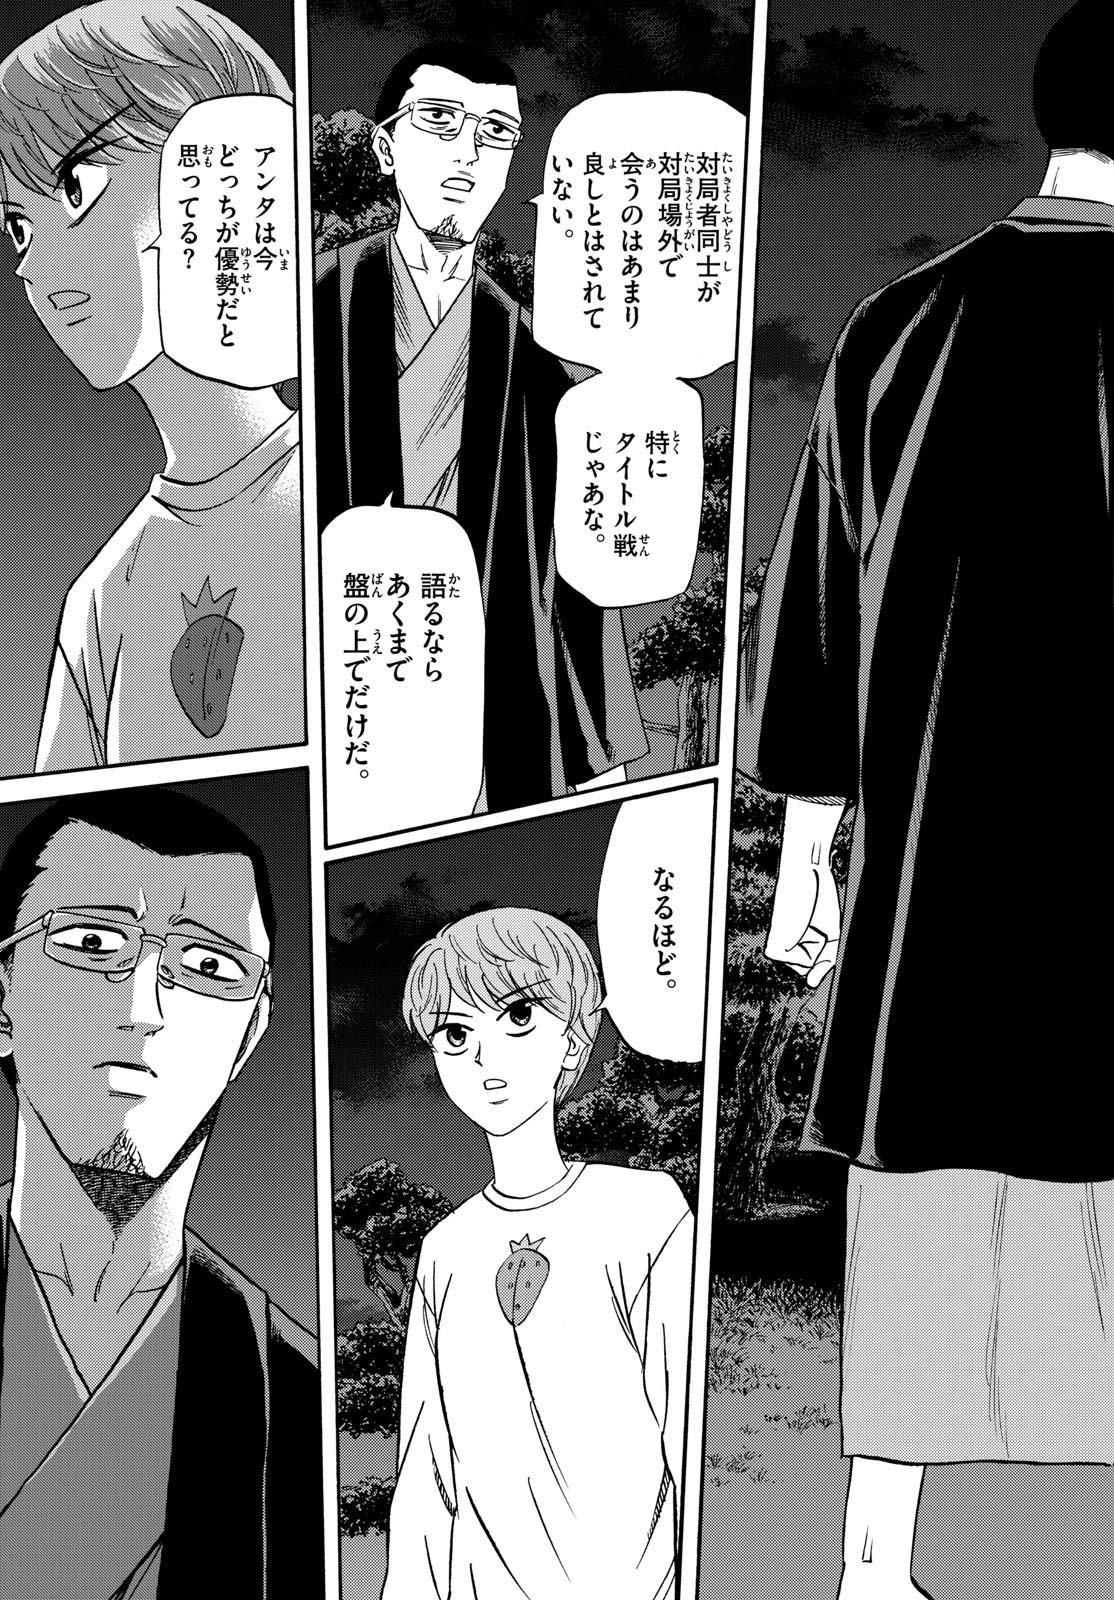 Ryu-to-Ichigo - Chapter 163 - Page 3